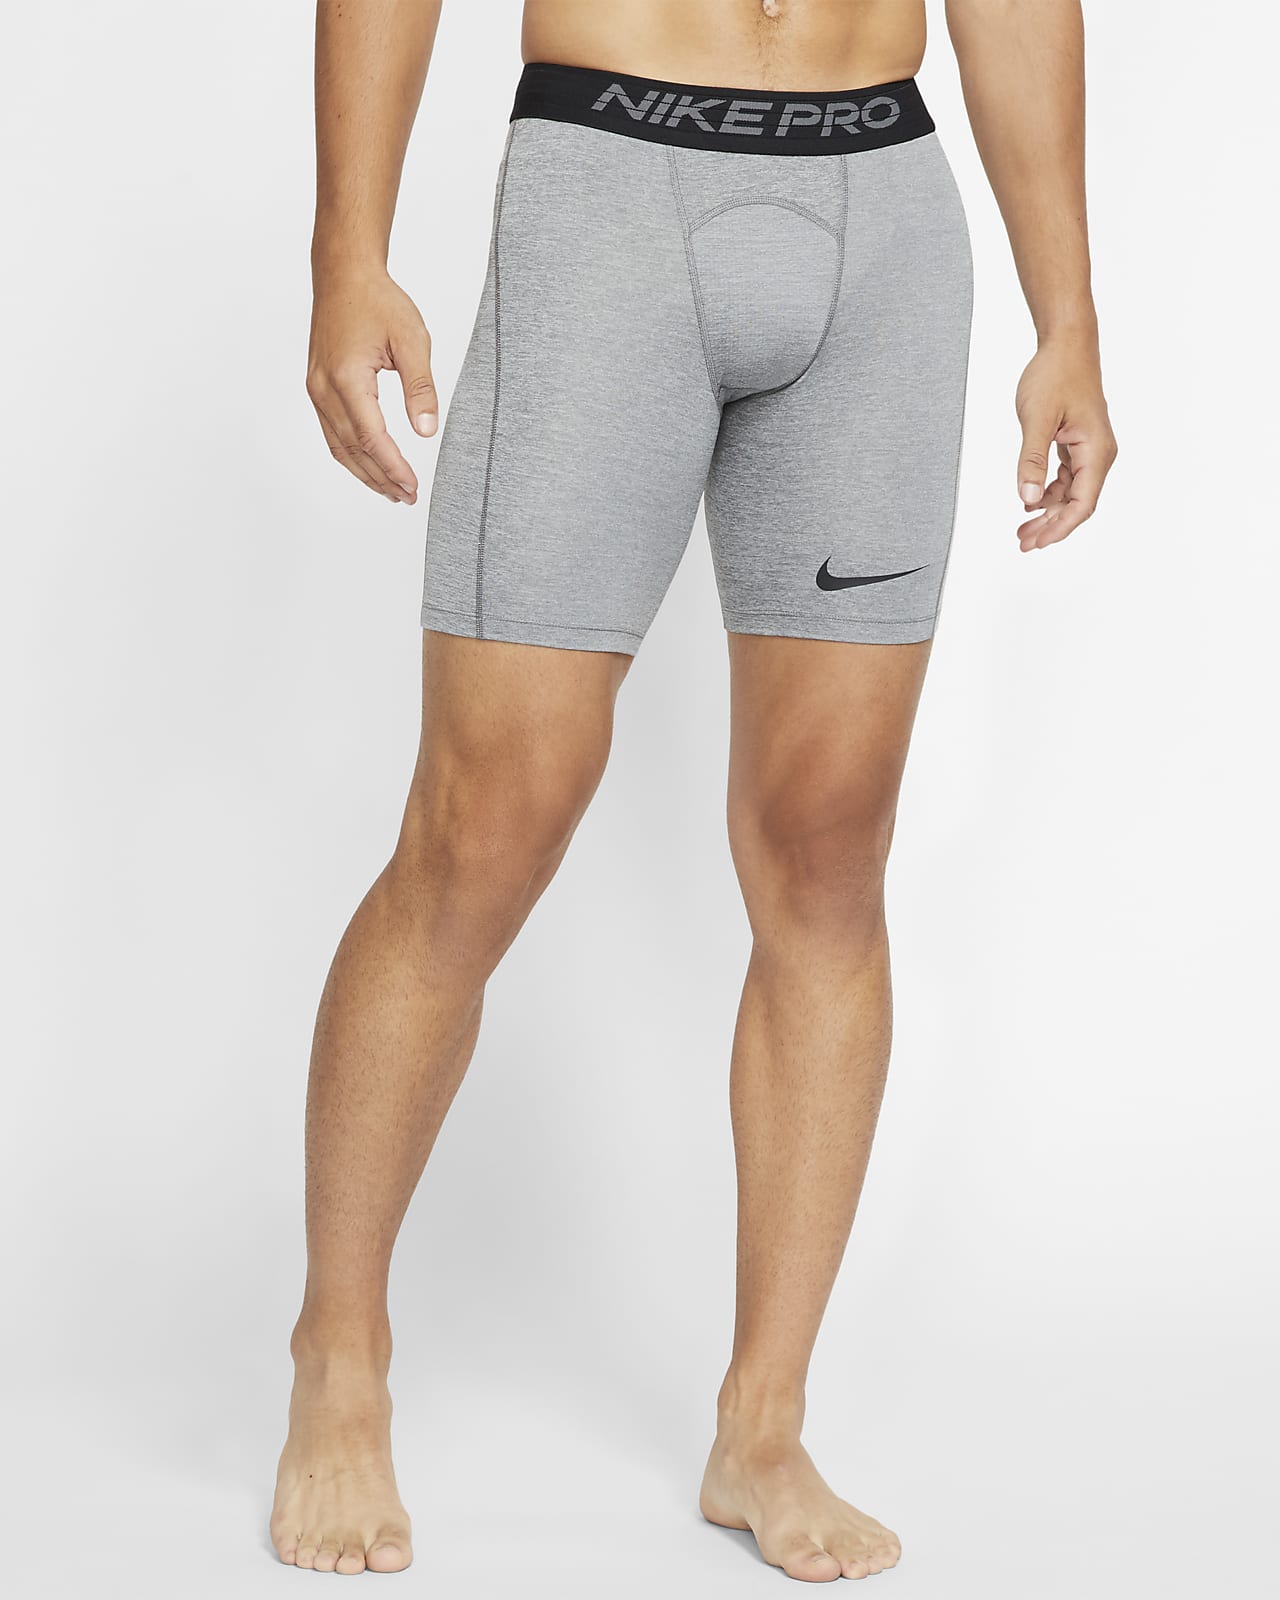 castillo Ceder proporción Shorts para hombre Nike Pro. Nike.com